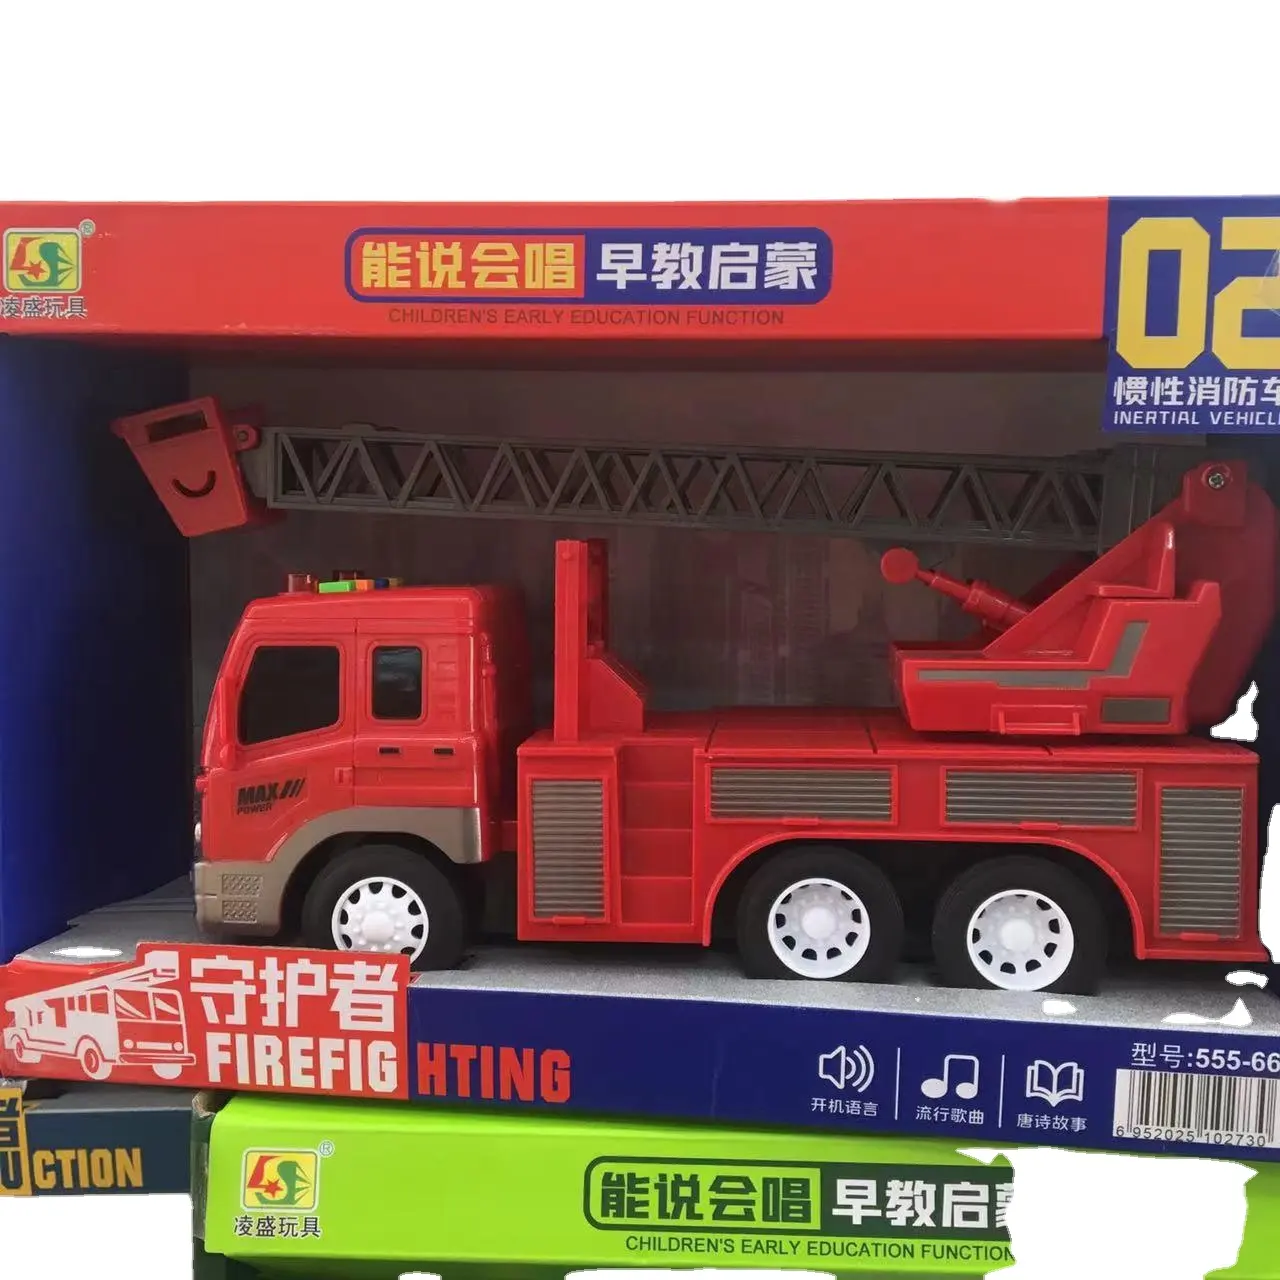 संगीत के साथ घर्षण खिलौना वाहन ट्रक